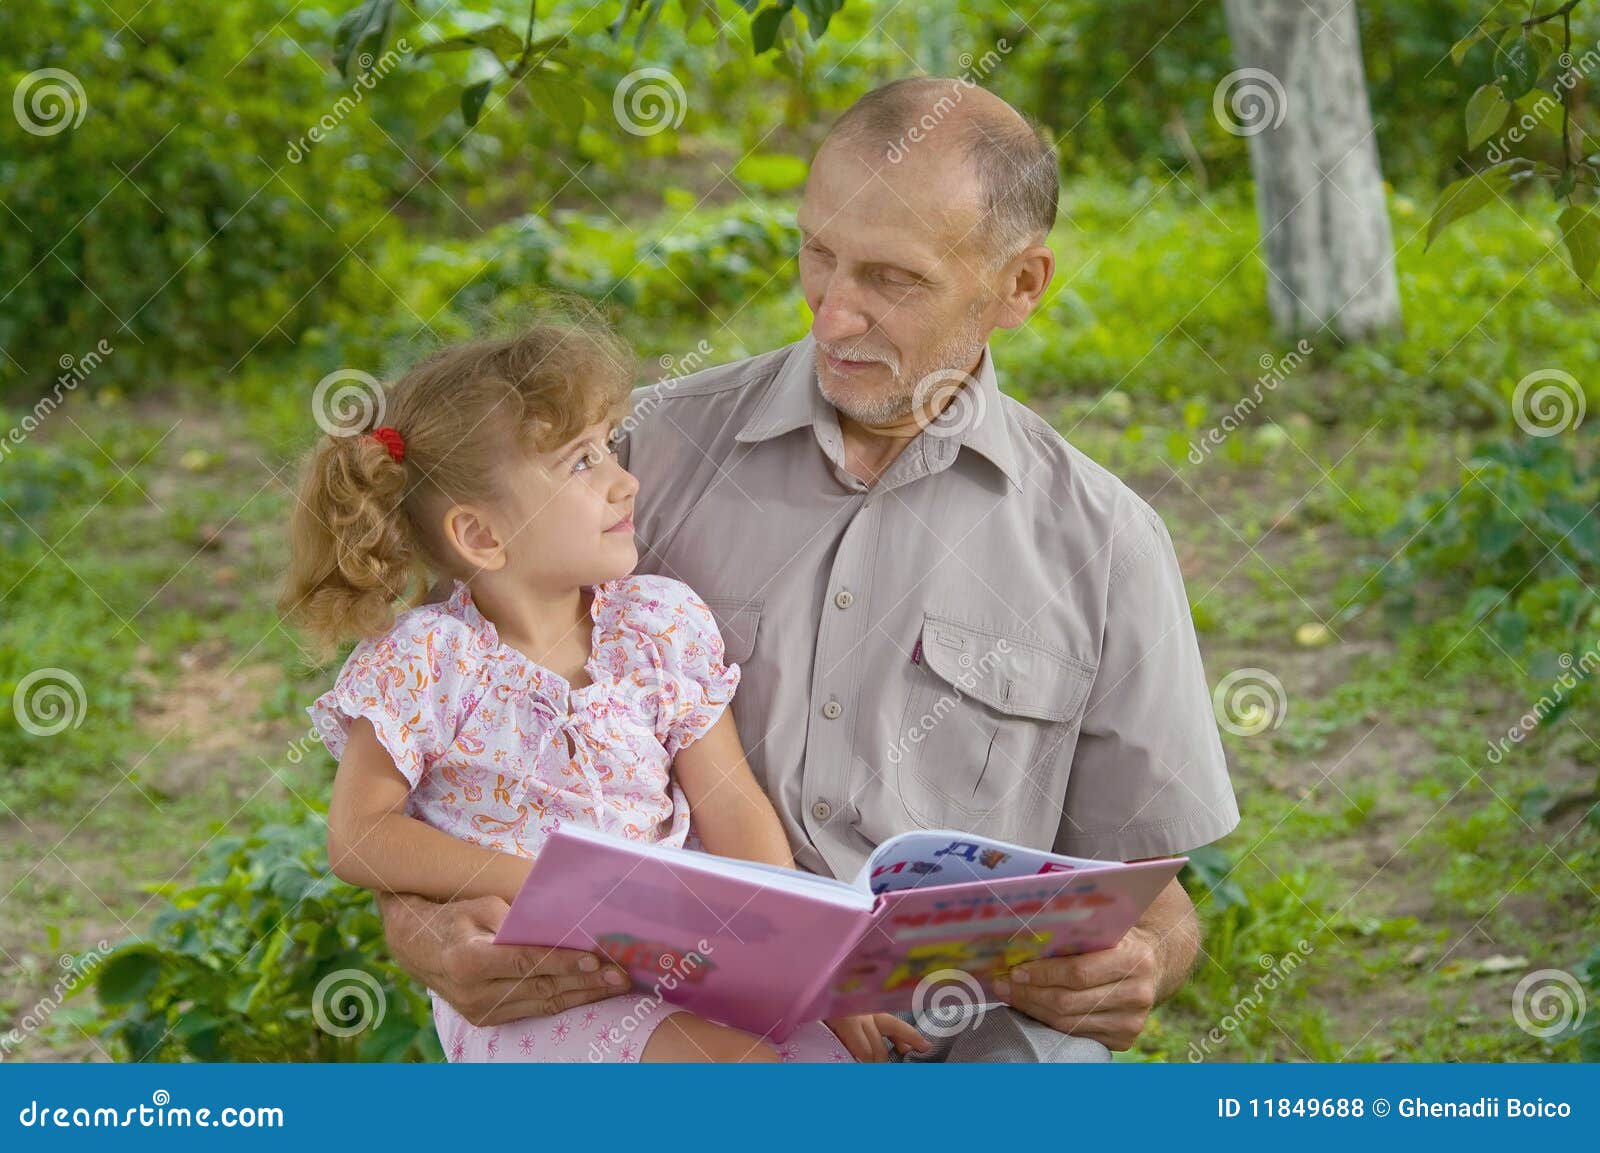 Дедушка и внучка в лесу. Дедушка и внучка. Дедушка с внучкой фото. Дедушка с внучкой читают.